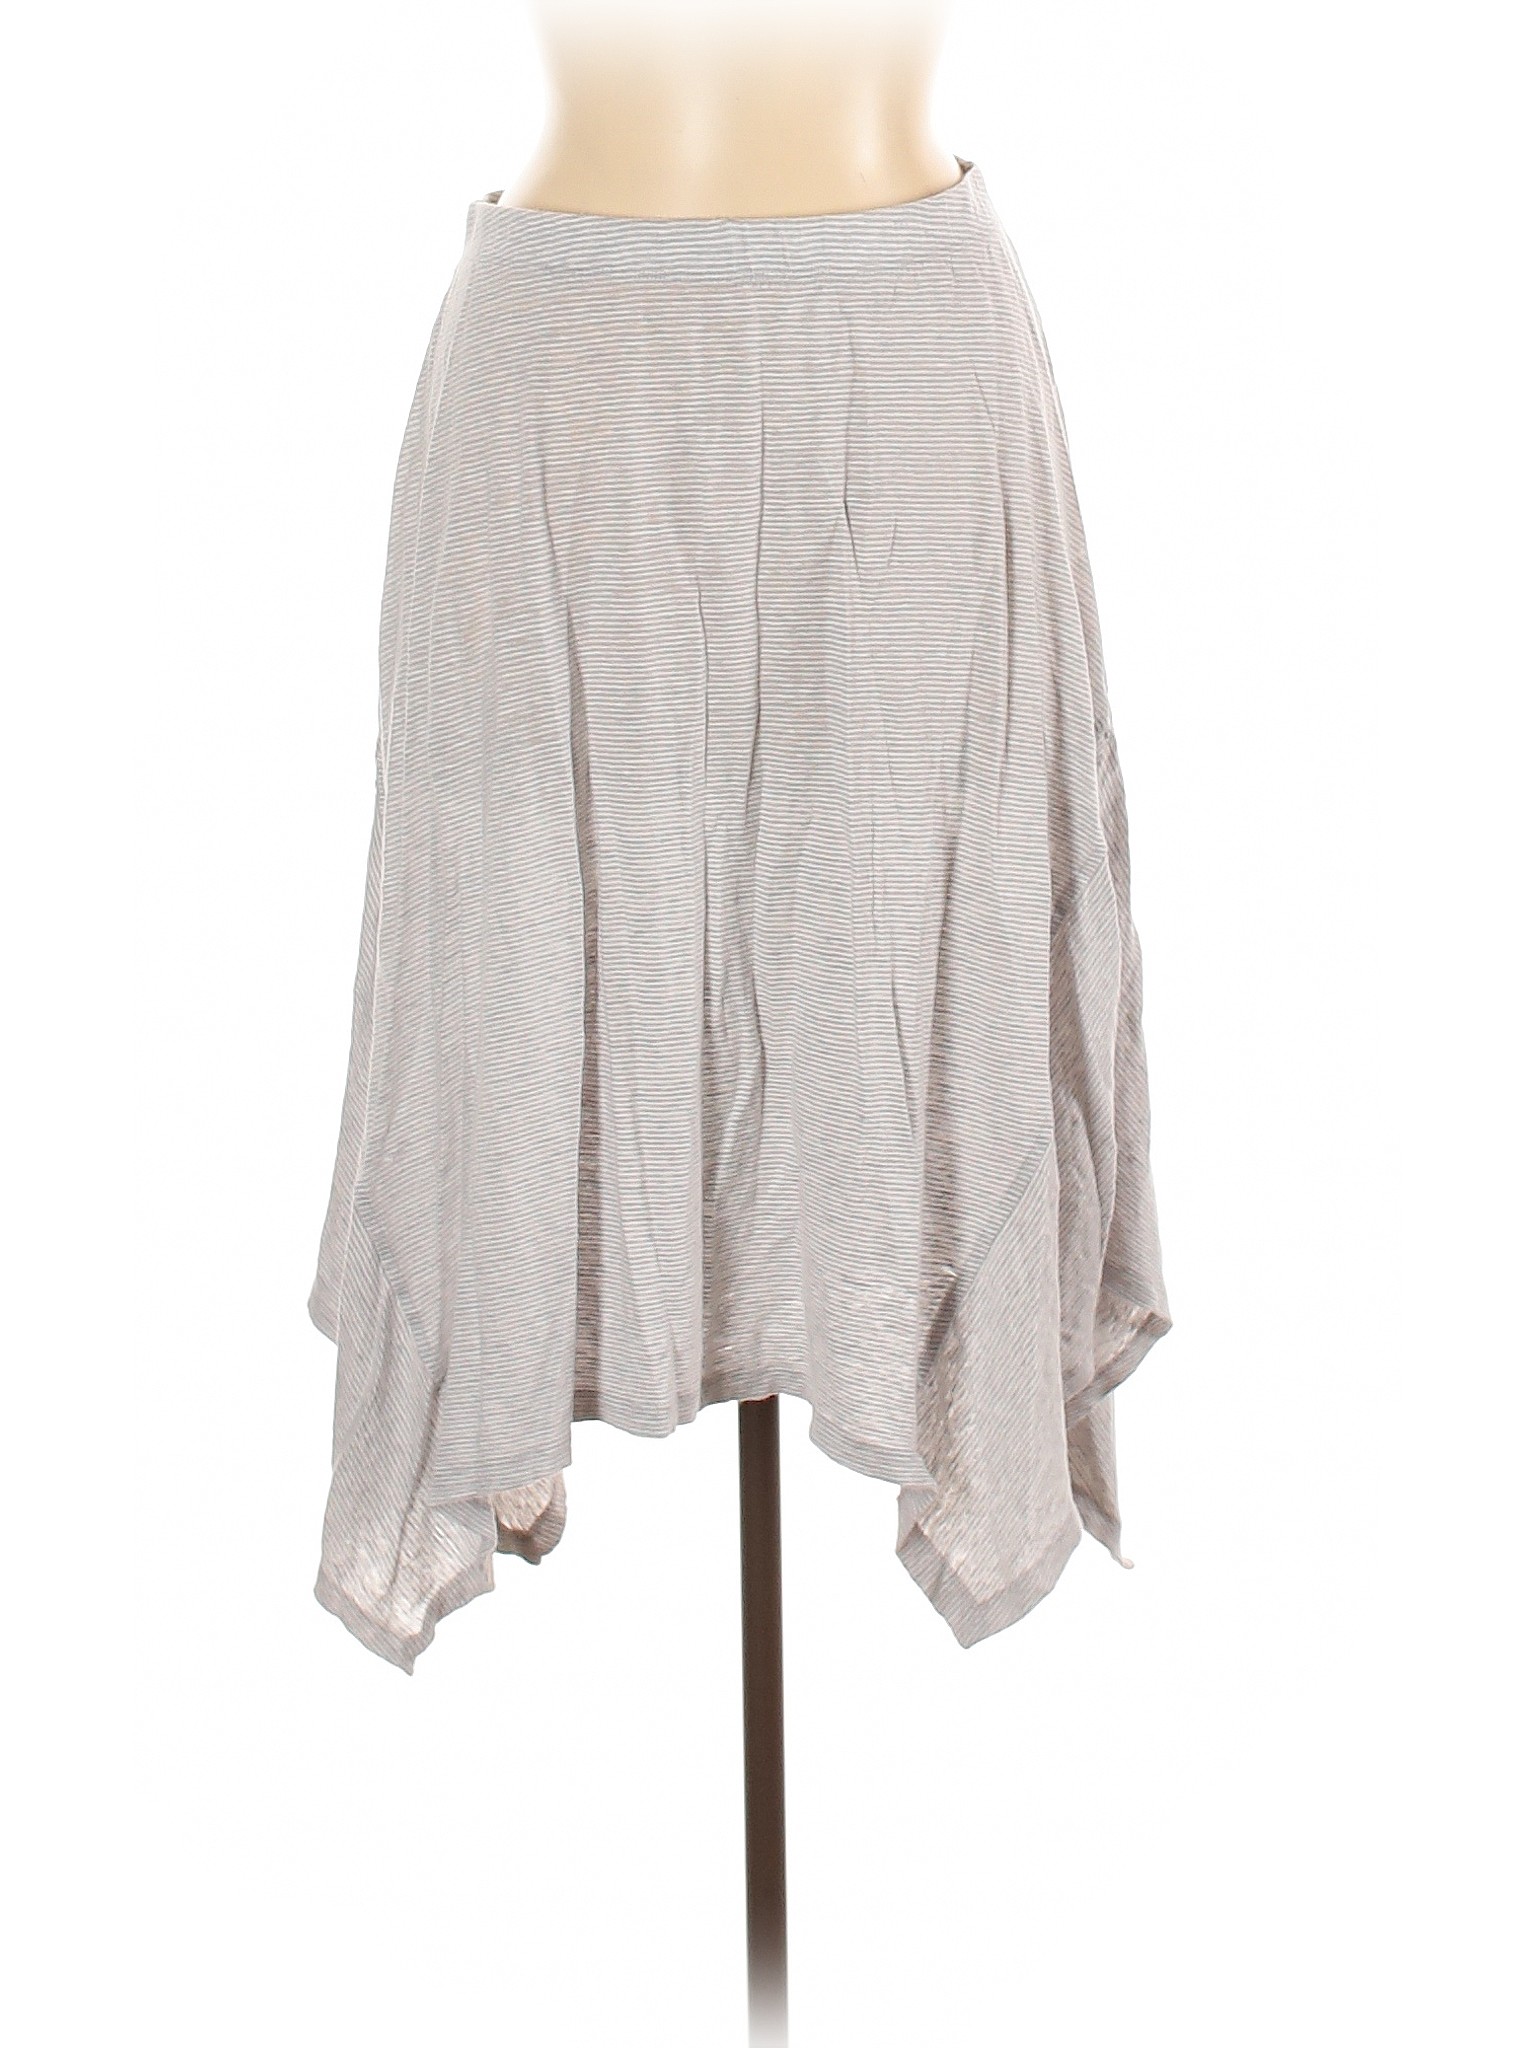 Eileen Fisher Women White Casual Skirt XS | eBay